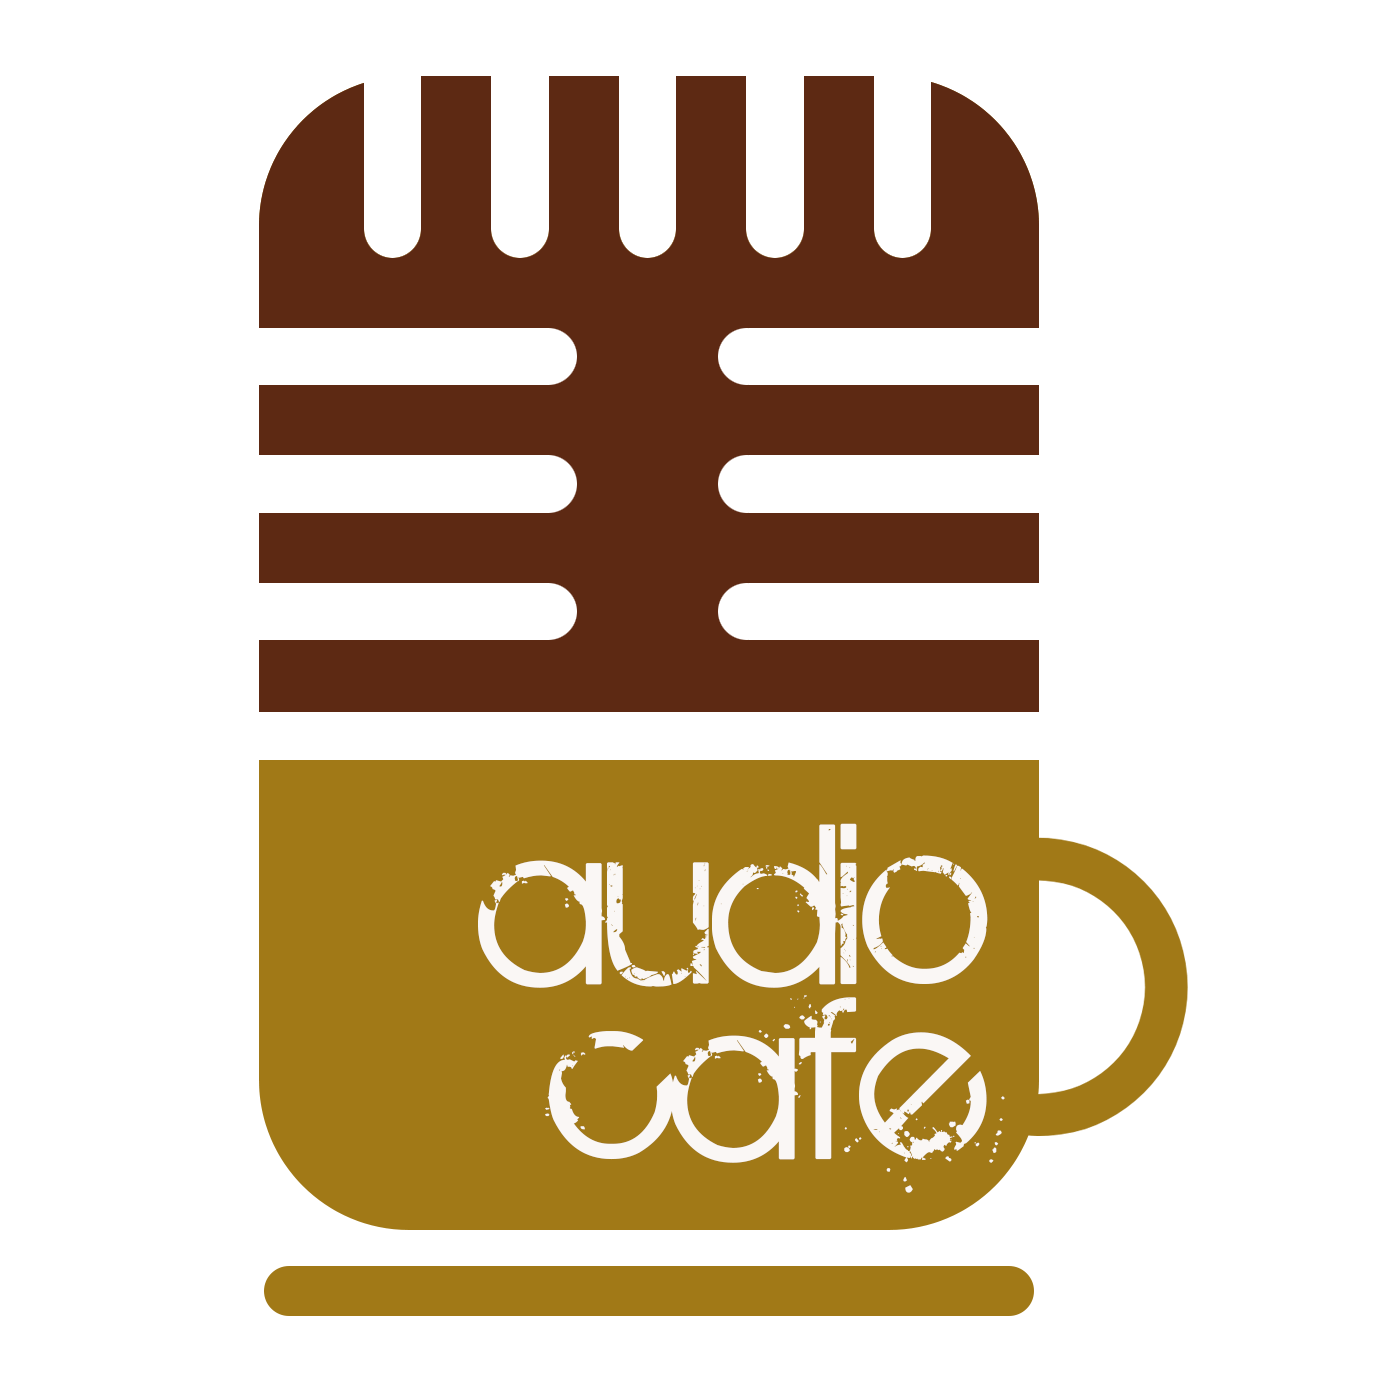 AudioCafe Gold Coast